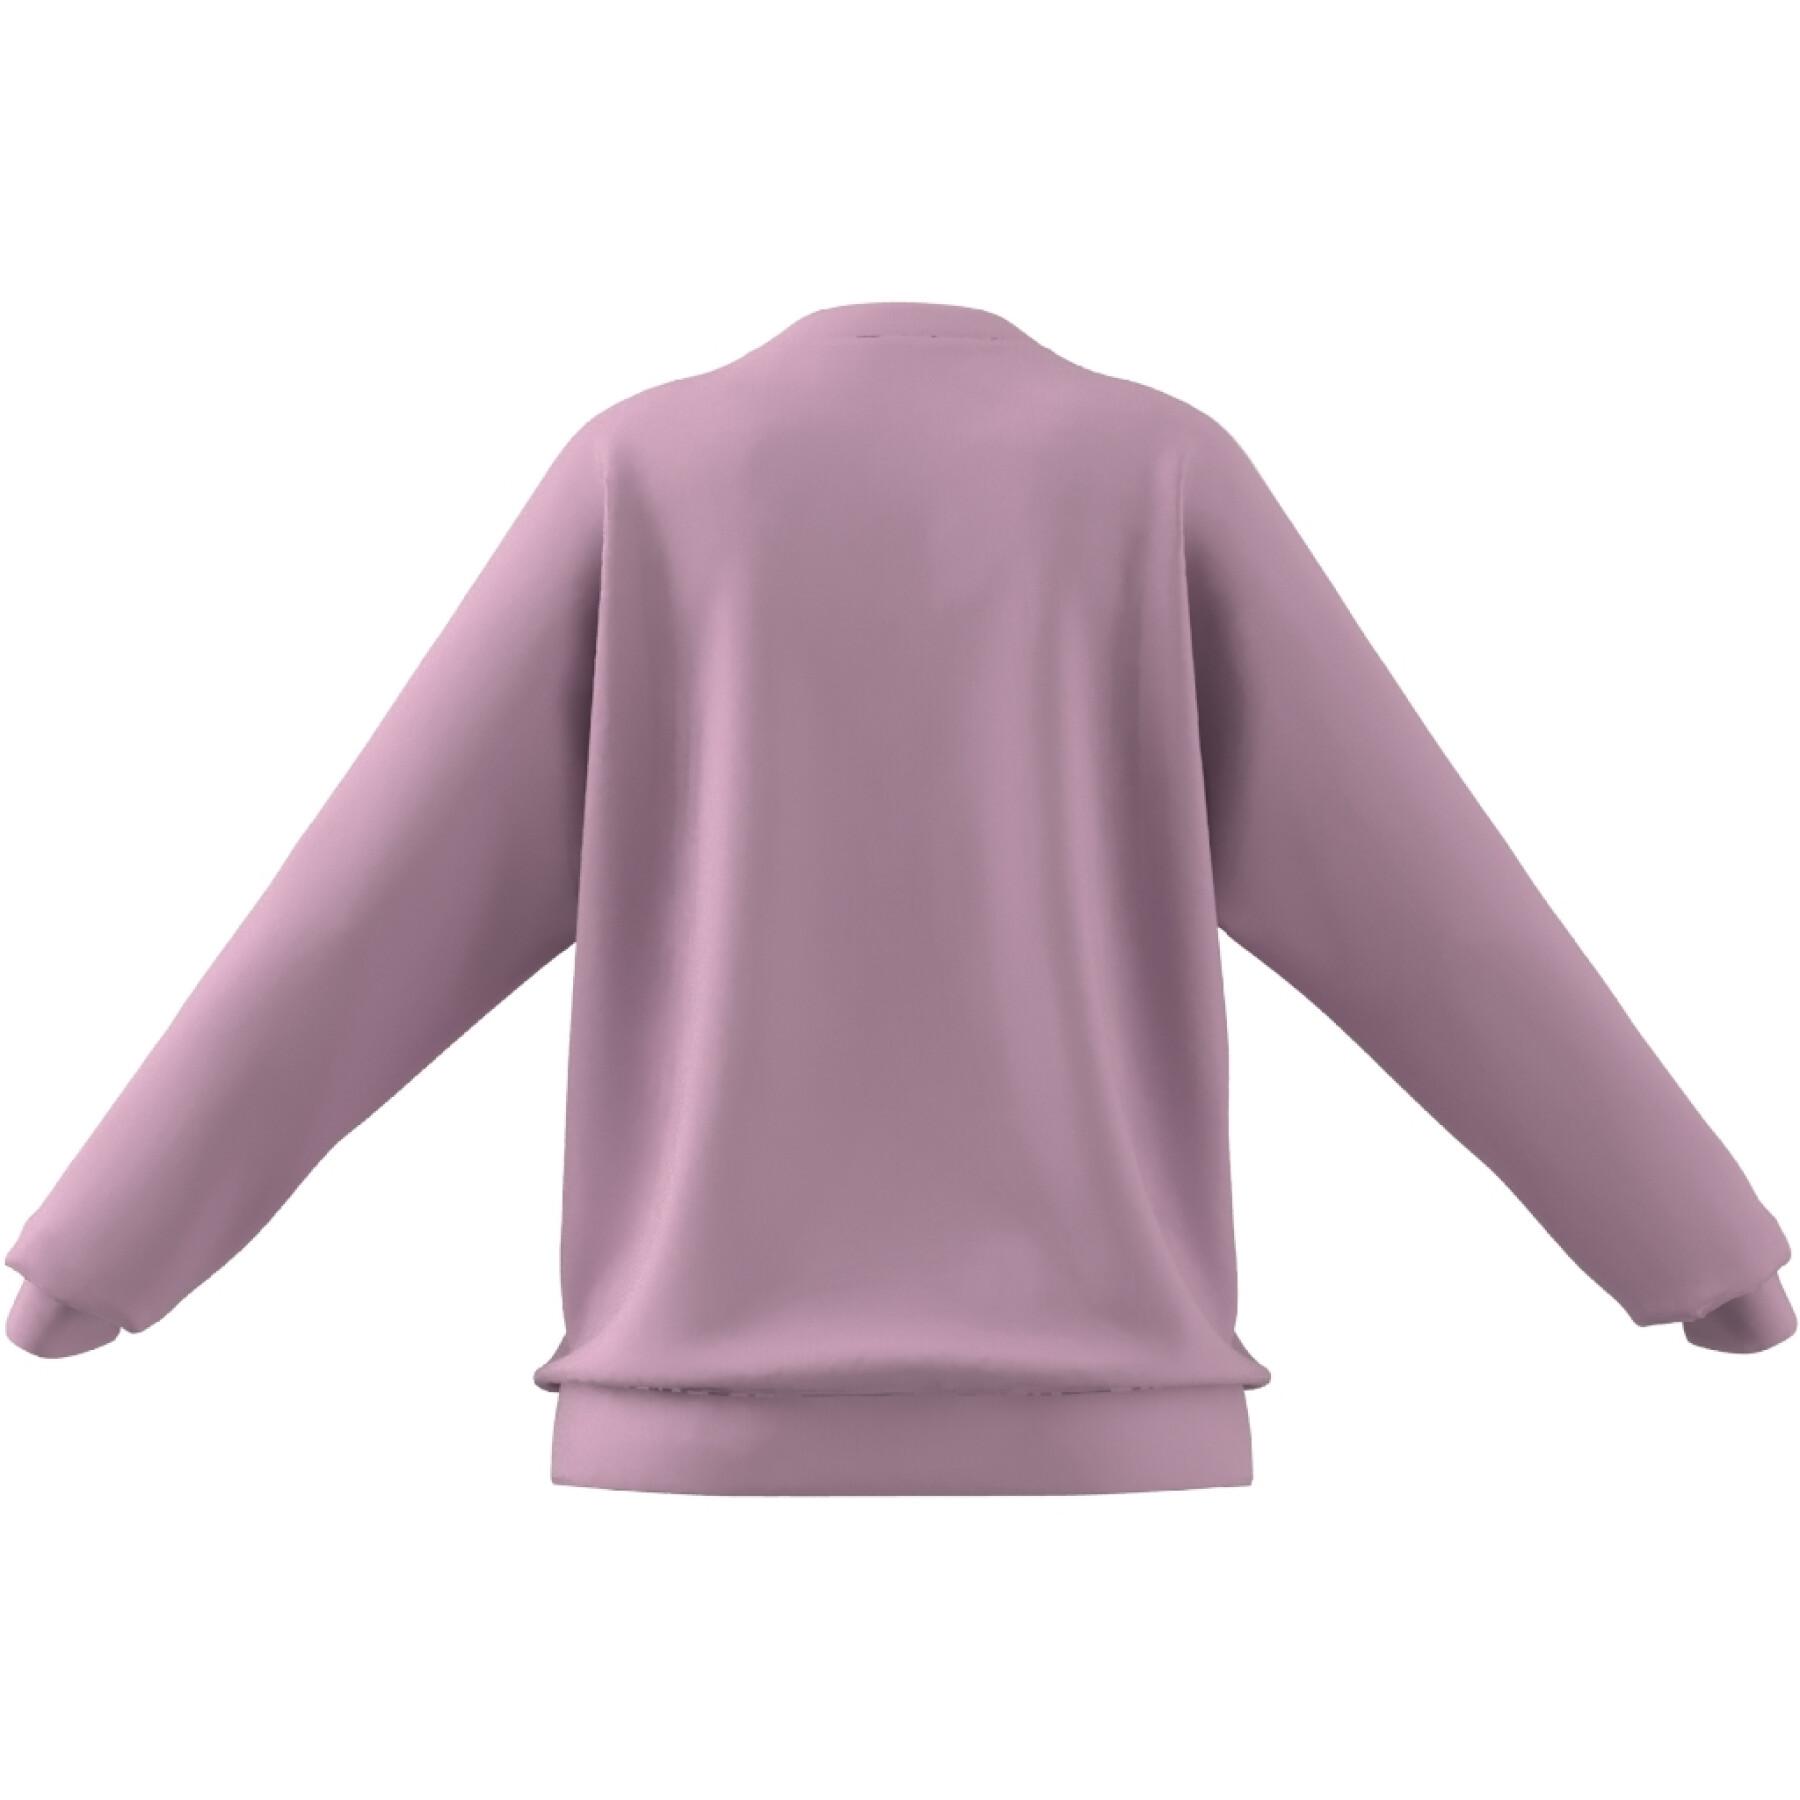 Sweatshirt mit 3 Streifen Frau adidas Essentials Studio Lounge